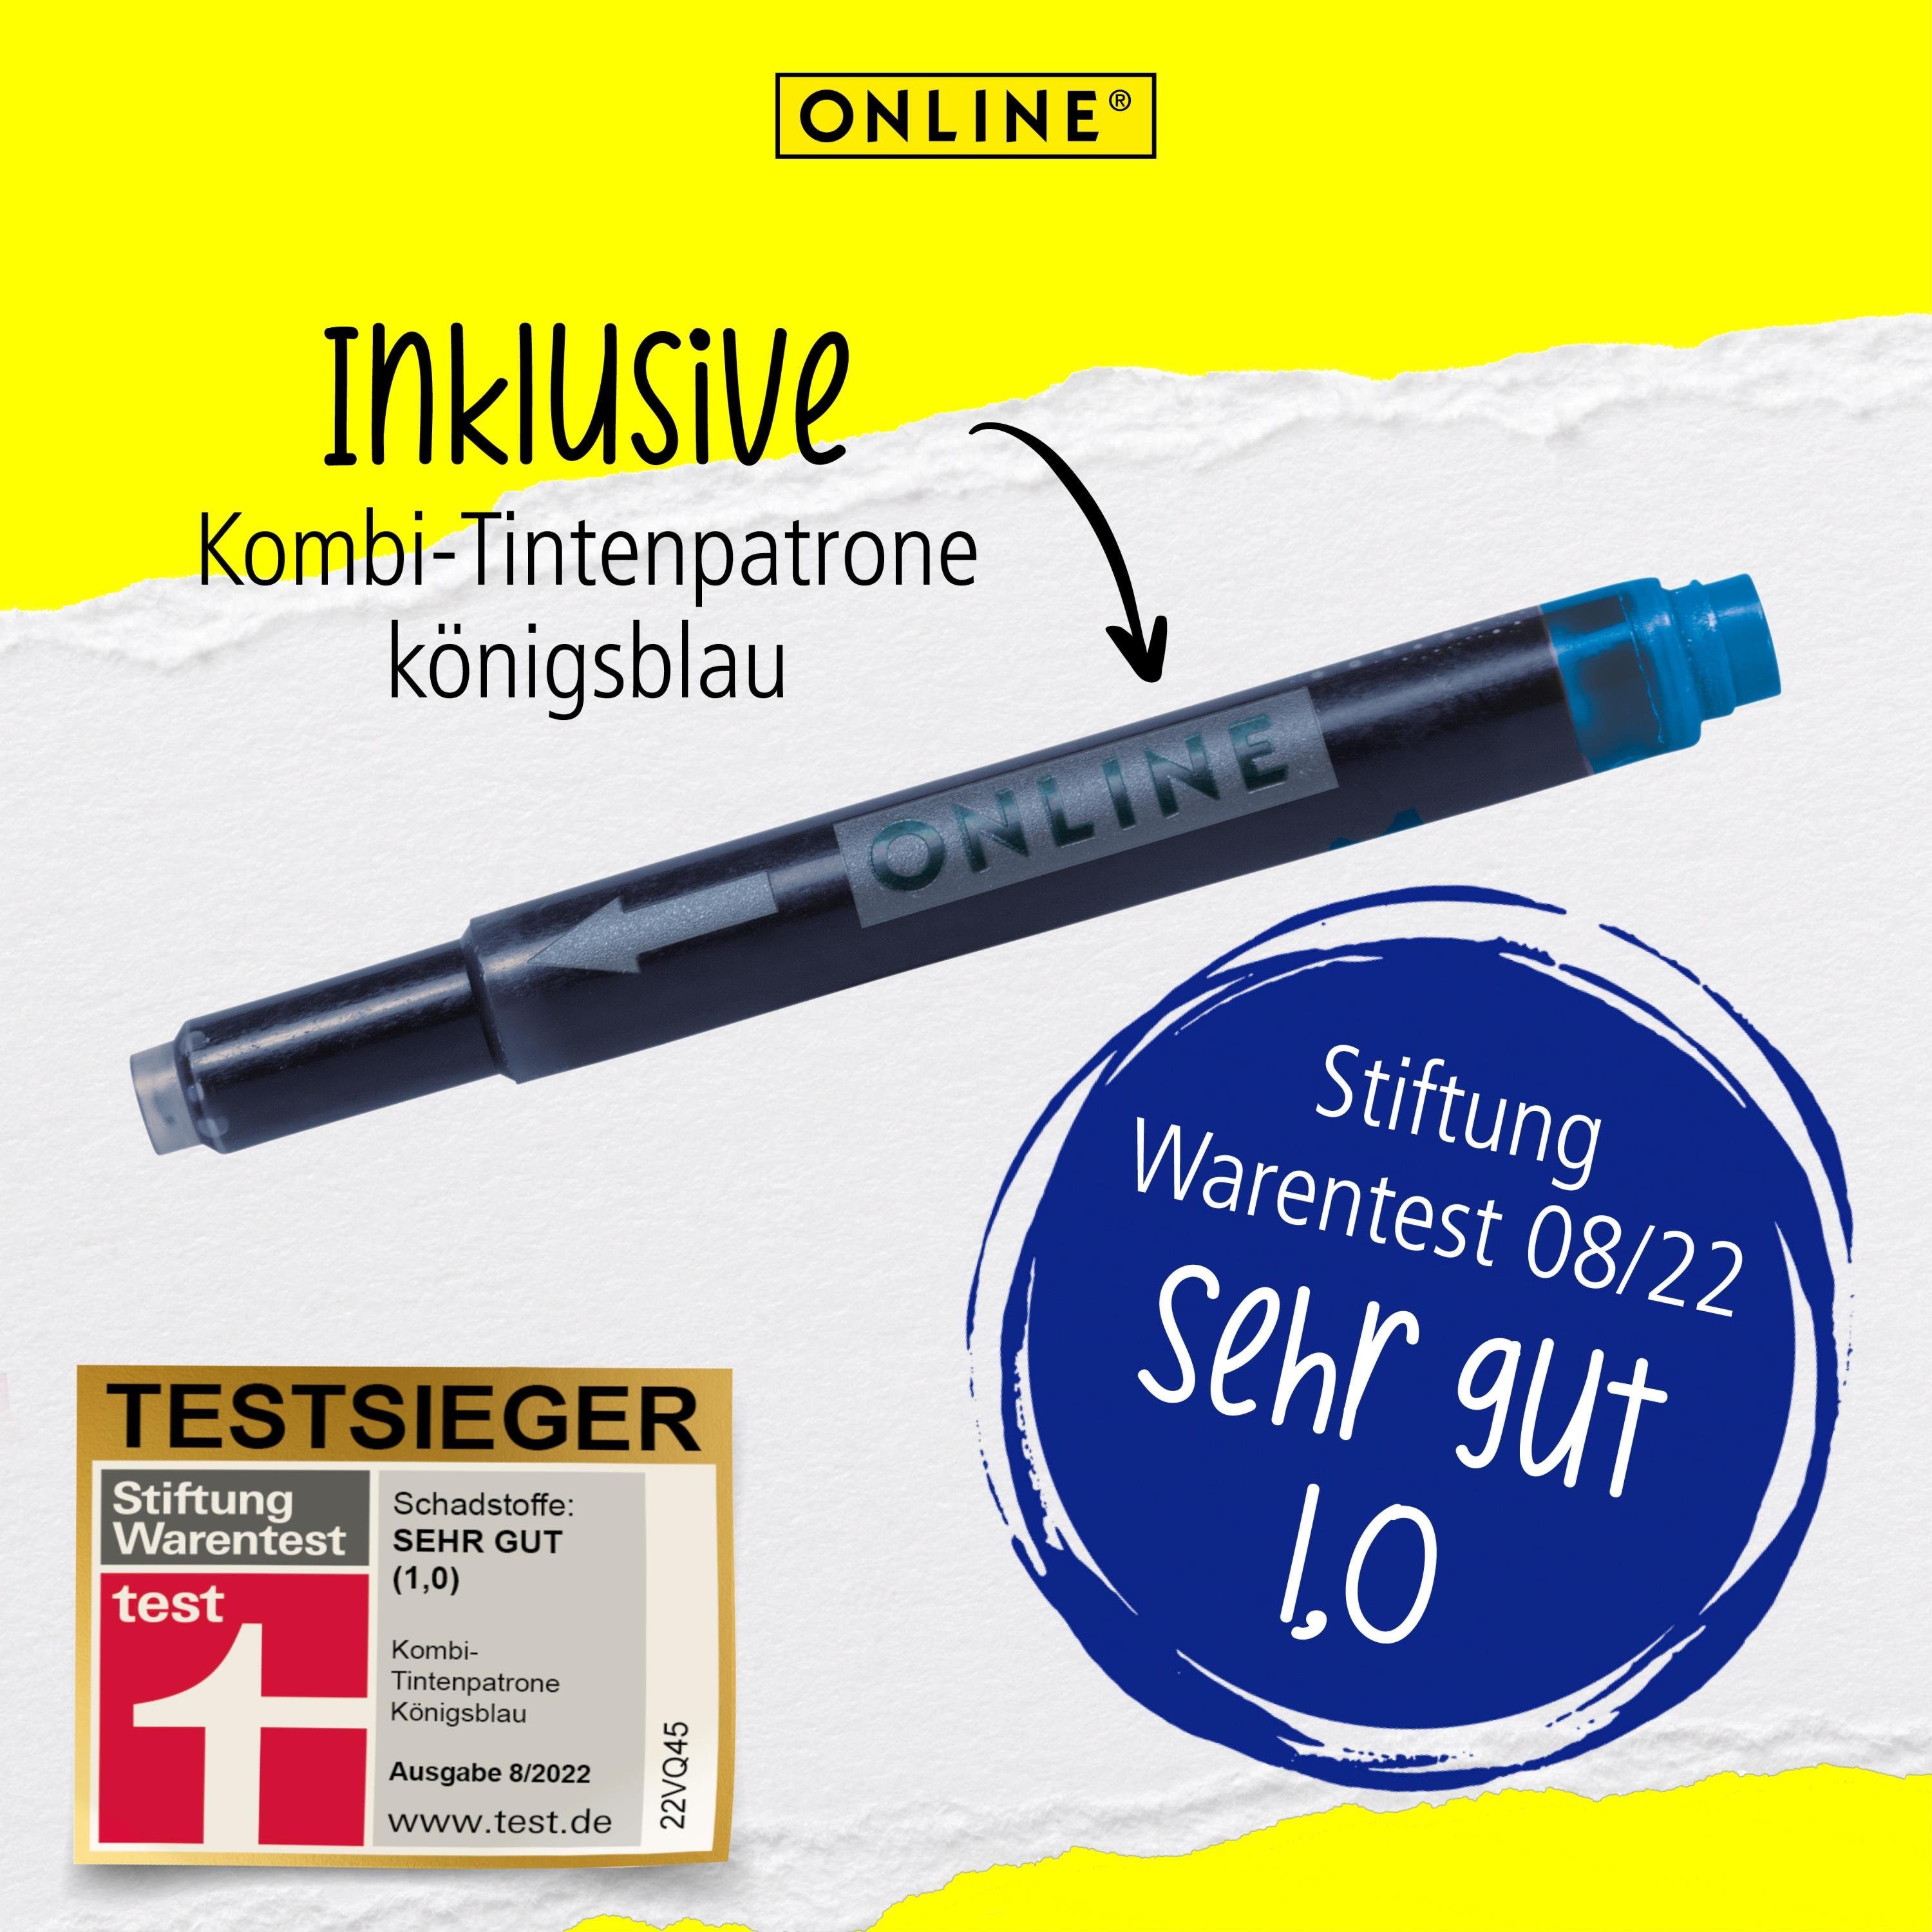 Online Pen ideal Style die hergestellt für Füller Blue Deutschland Schule, in College Füllhalter, ergonomisch